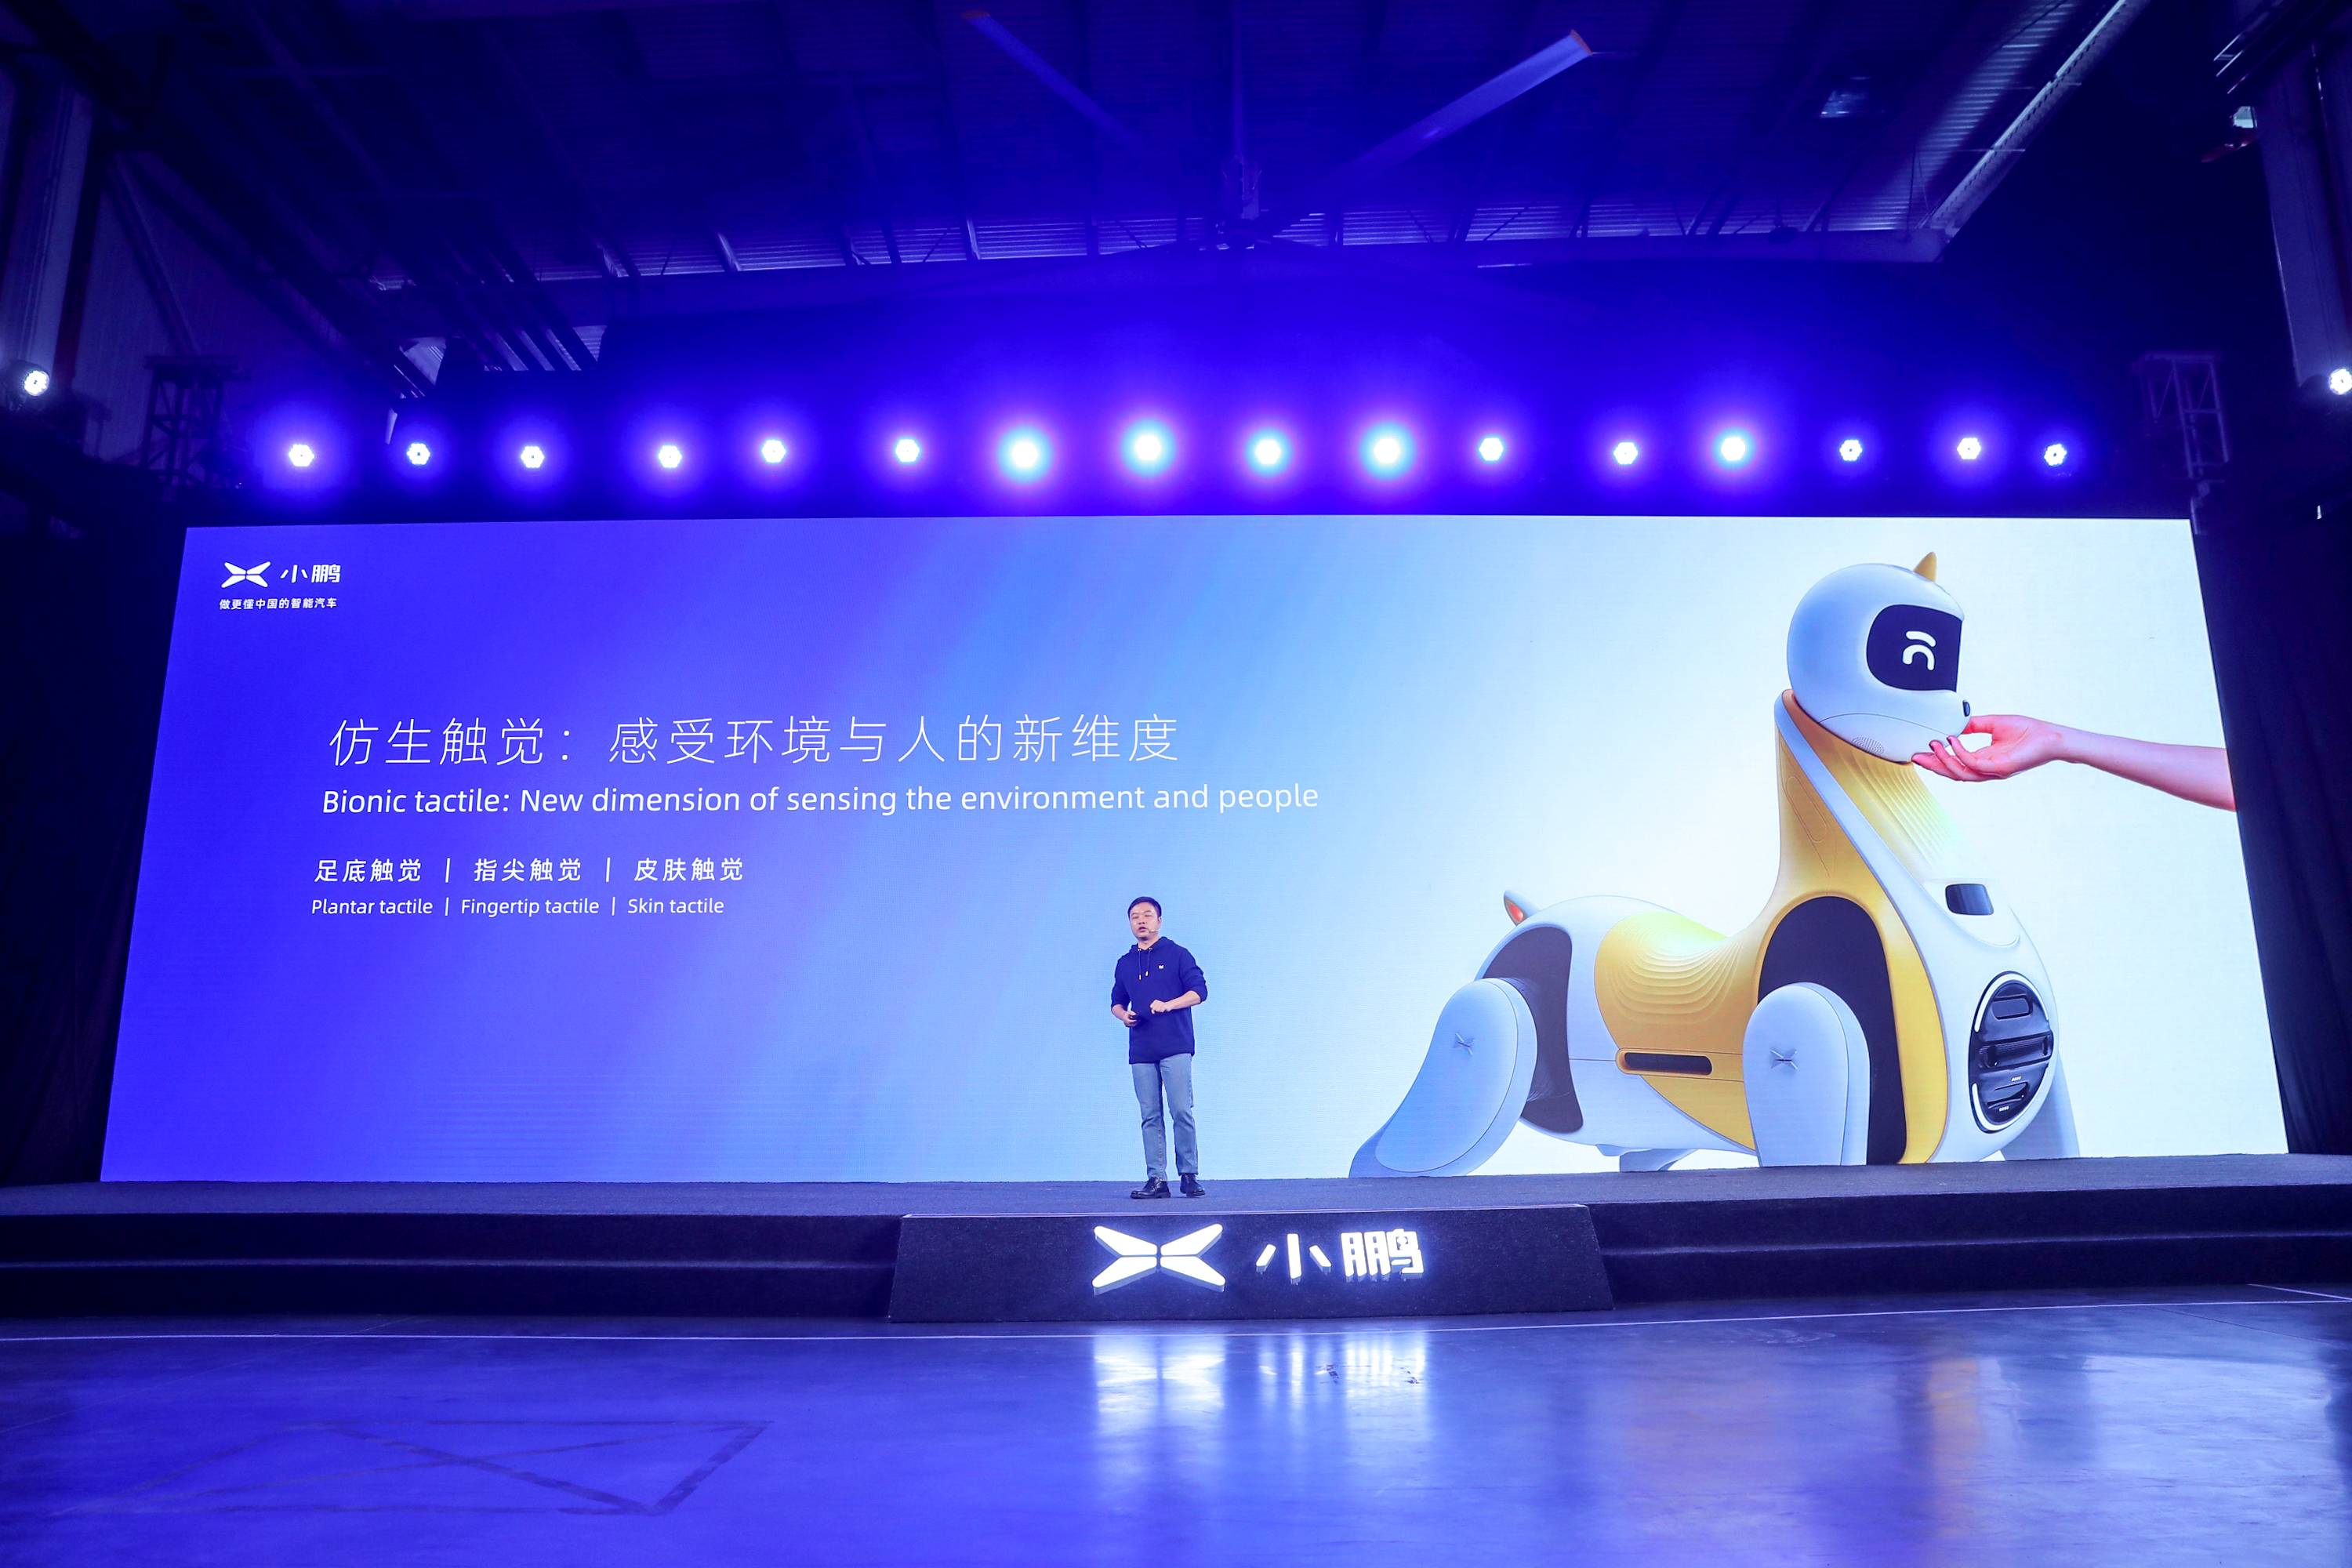 13 3 - Xiaopeng Automobile Technology Day: oltre al “super integratore” che percorre 200 chilometri in 5 minuti, c’è anche questa macchina volante da un milione di livelli